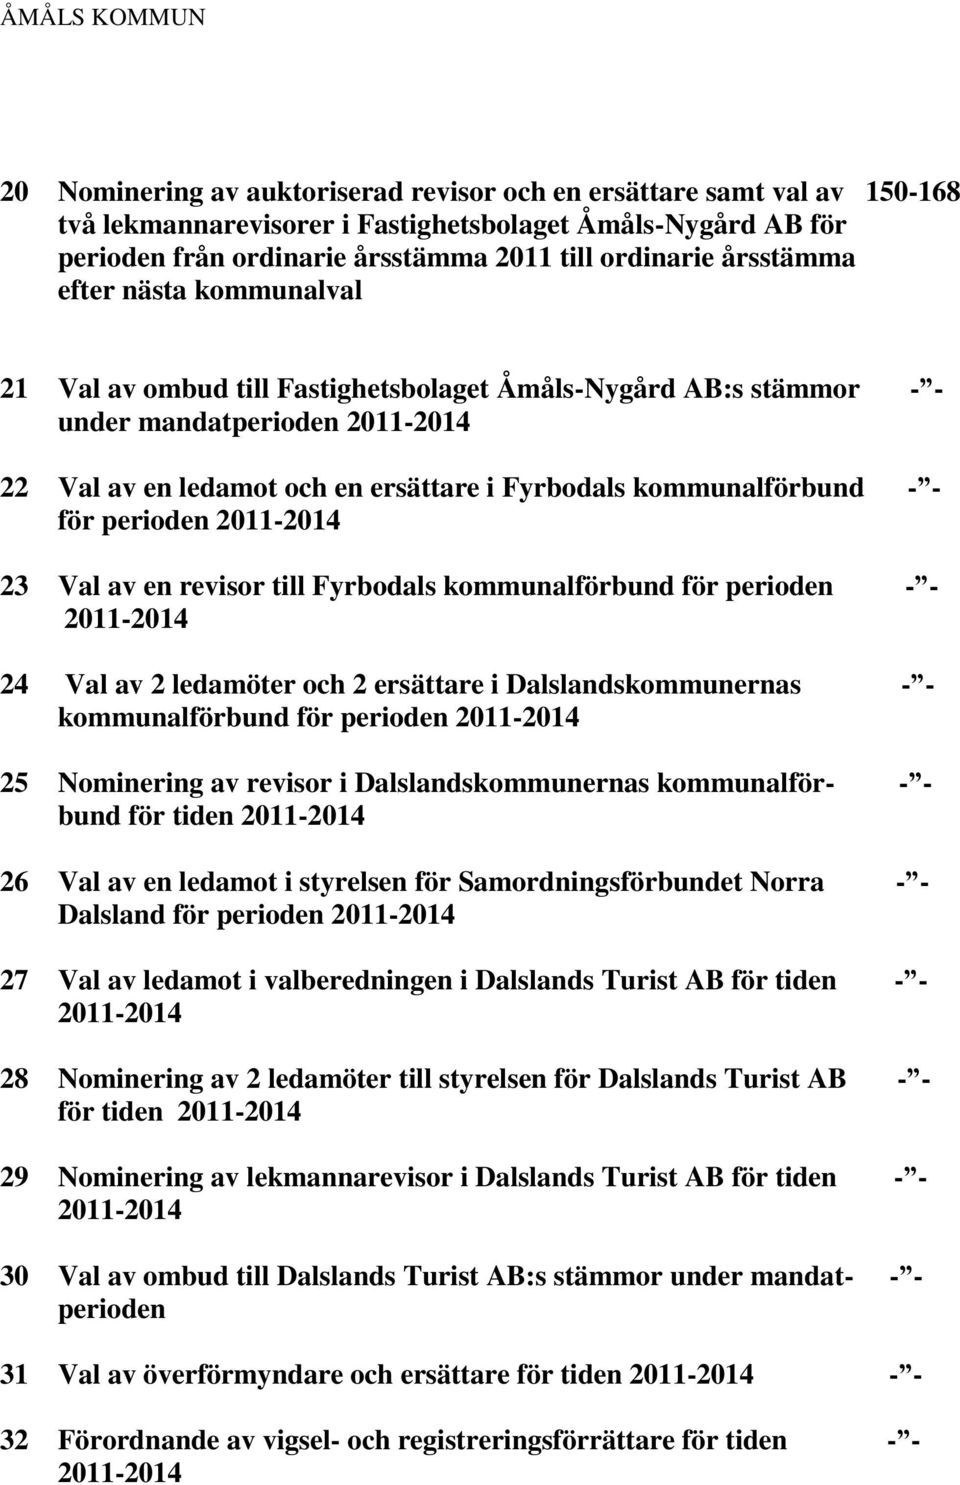 perioden 23 Val av en revisor till Fyrbodals kommunalförbund för perioden - - 24 Val av 2 ledamöter och 2 ersättare i Dalslandskommunernas - - kommunalförbund för perioden 25 Nominering av revisor i